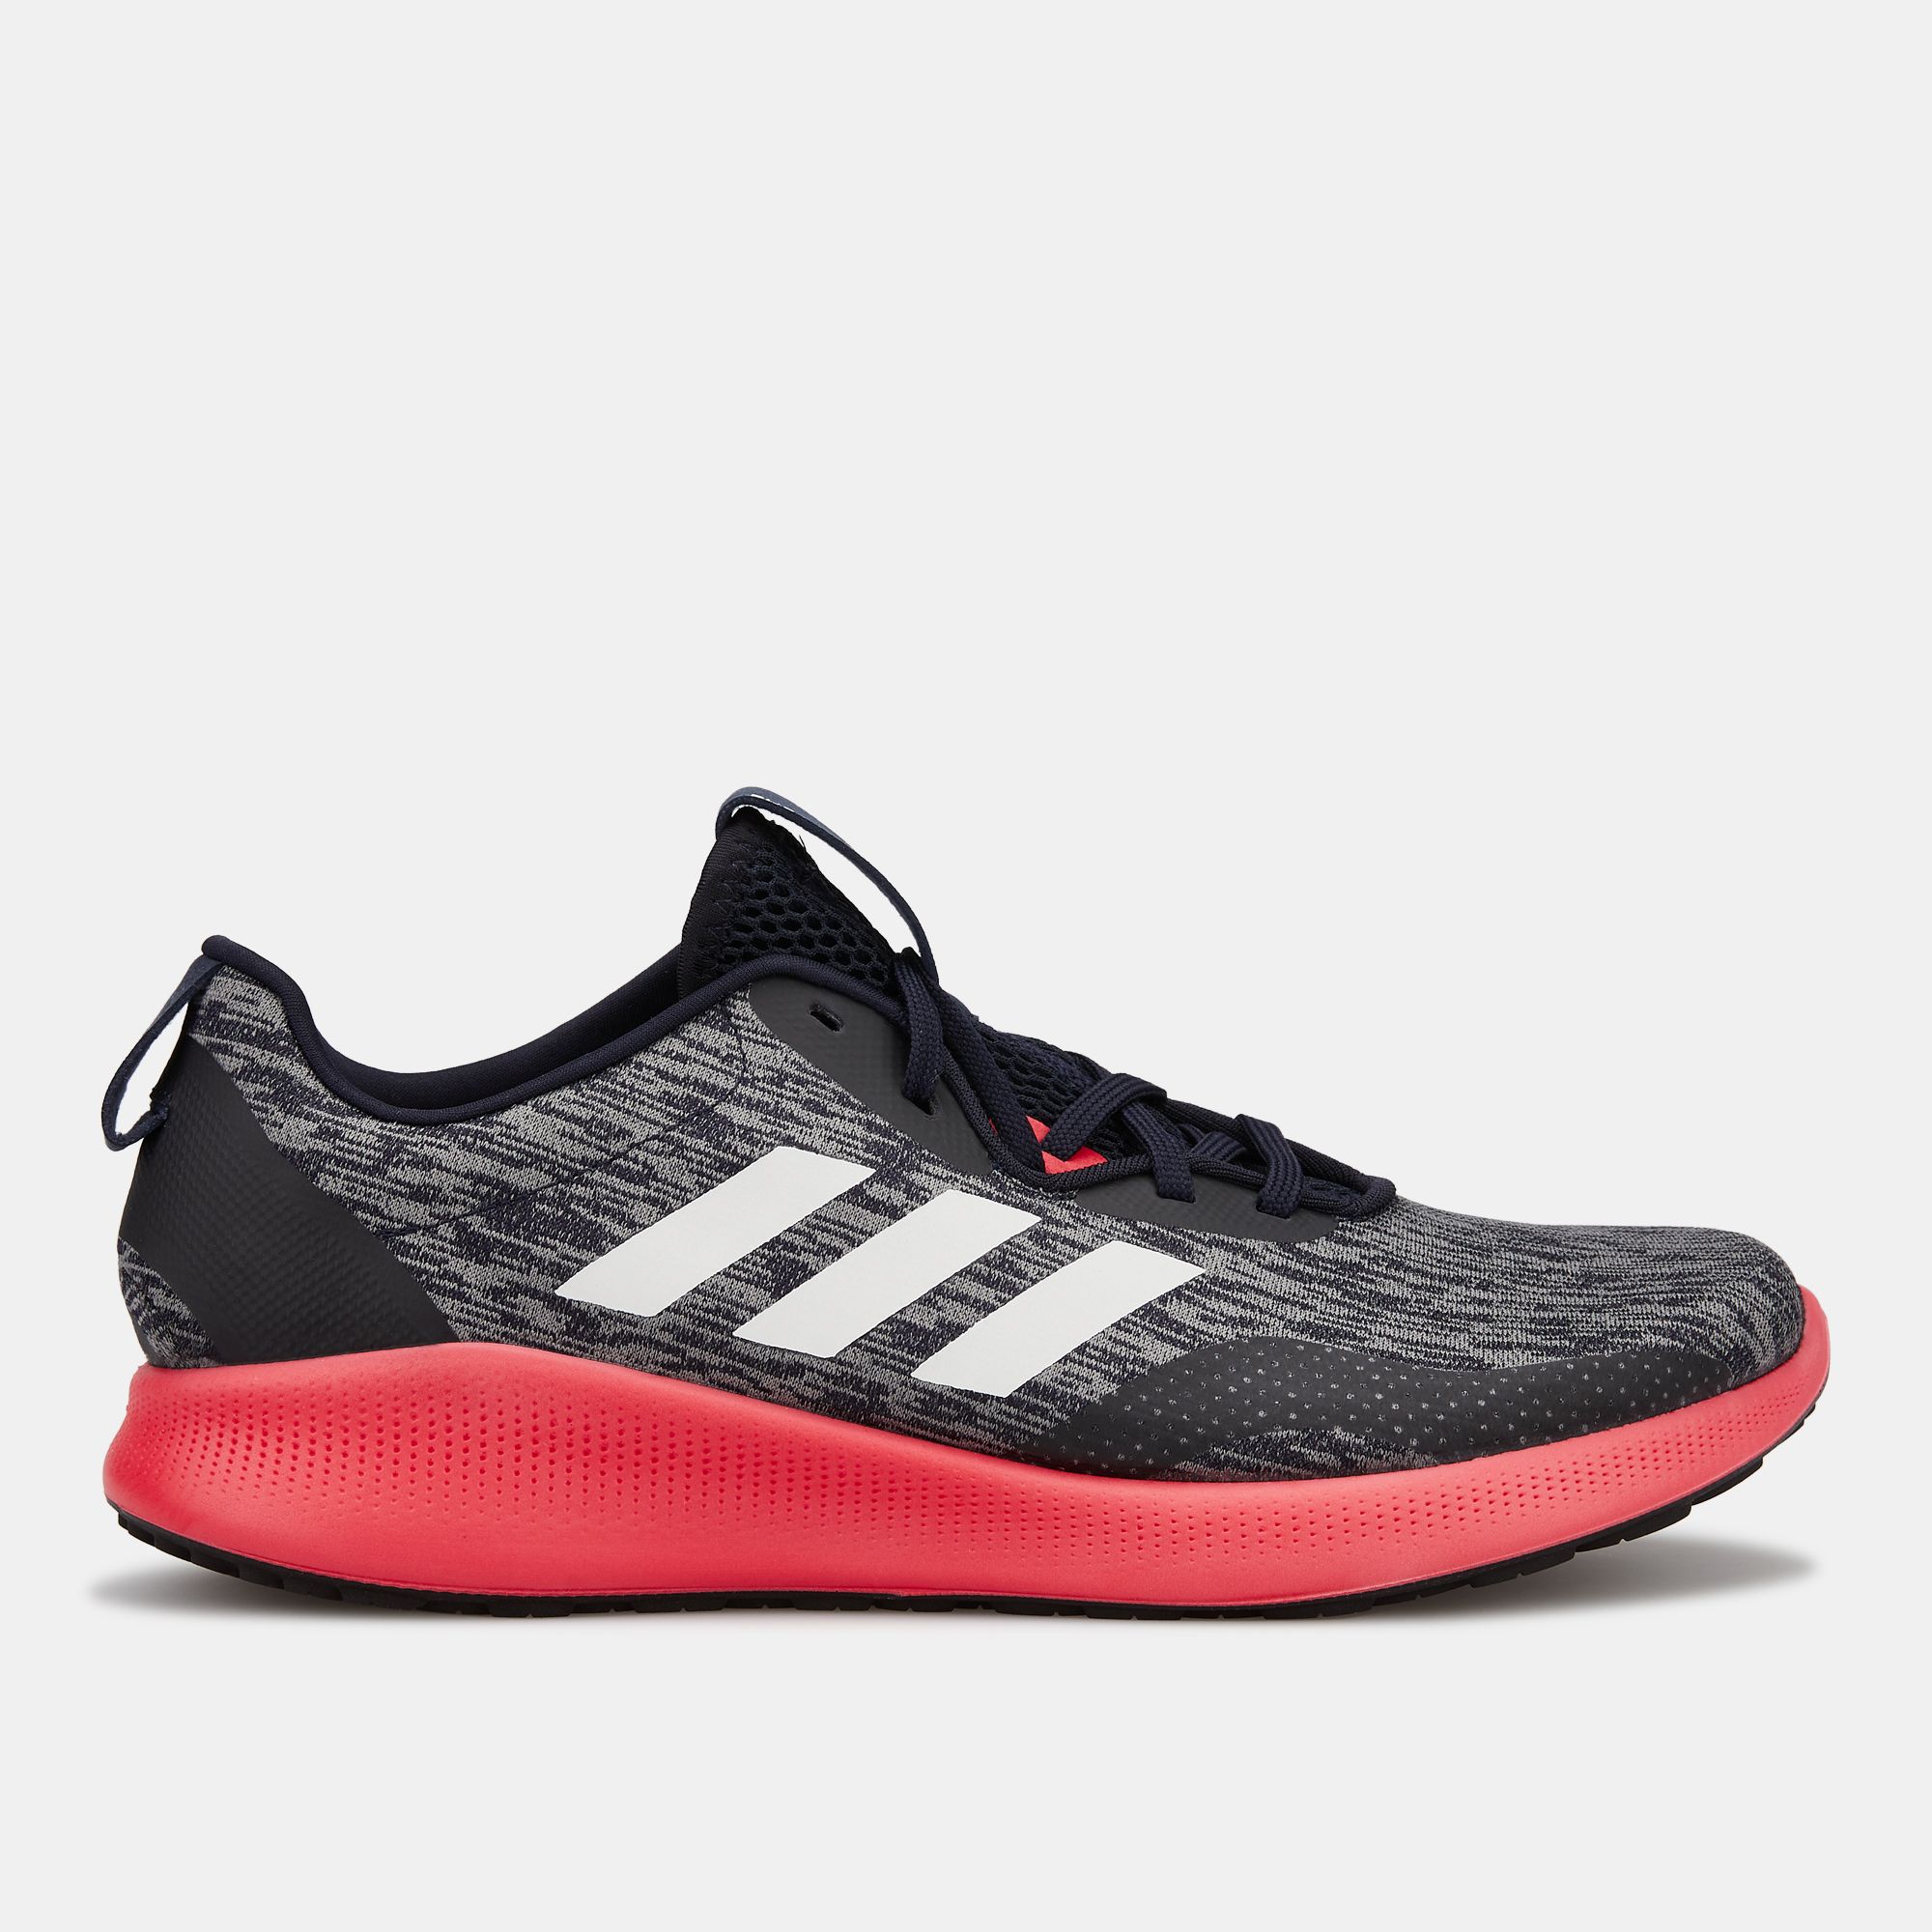 adidas men's purebounce  running shoes